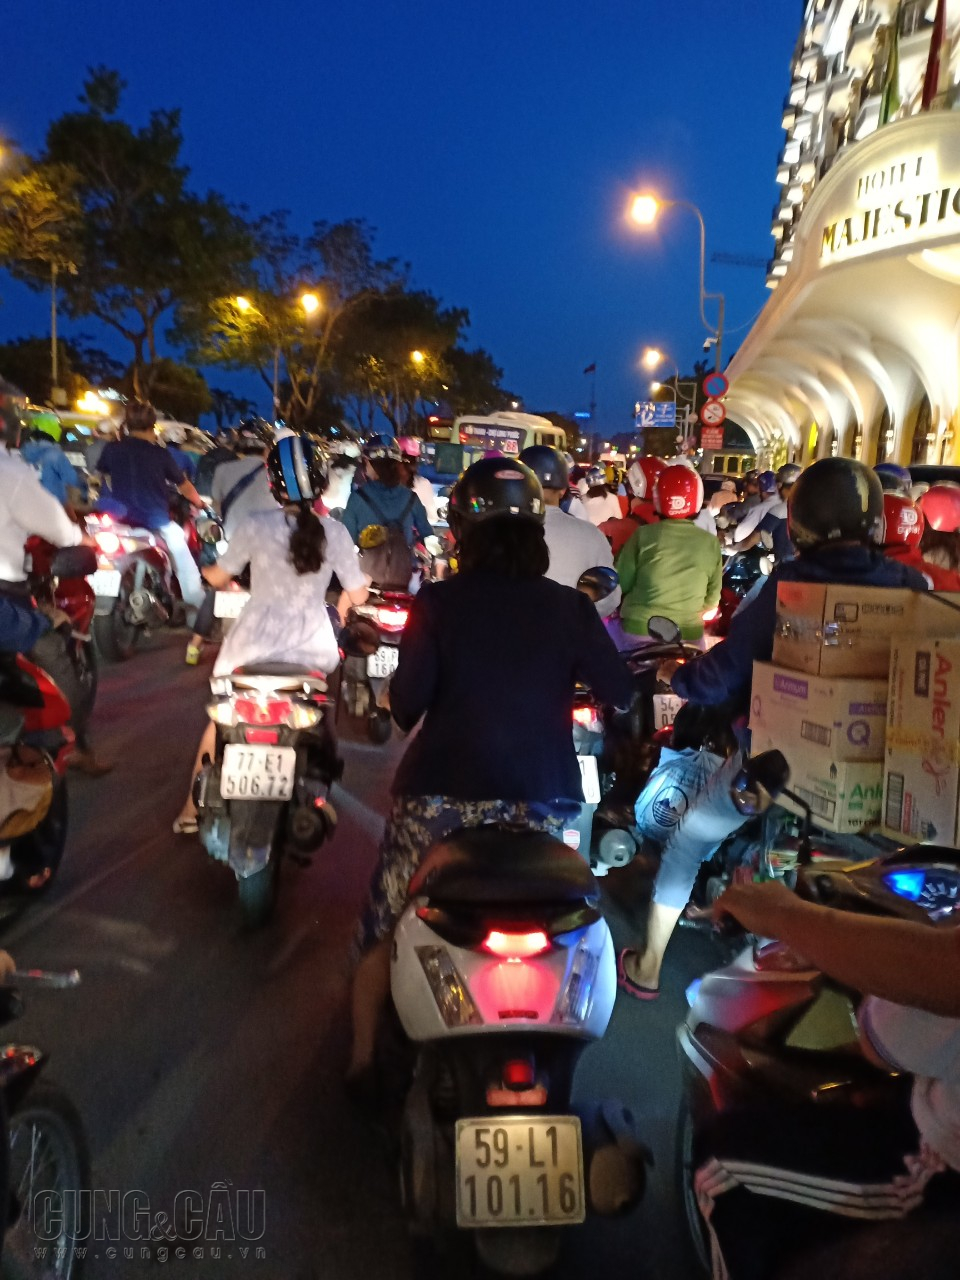 Bắt đầu từ chiều, nhiều tiếng còi inh ỏi kéo theo các dòng xe máy ùn ùn nối đuôi nhau hô hào Việt Nam vô địch, khiến cho đông đảo người đi làm về hào hứng với trận bóng lịch sử này.